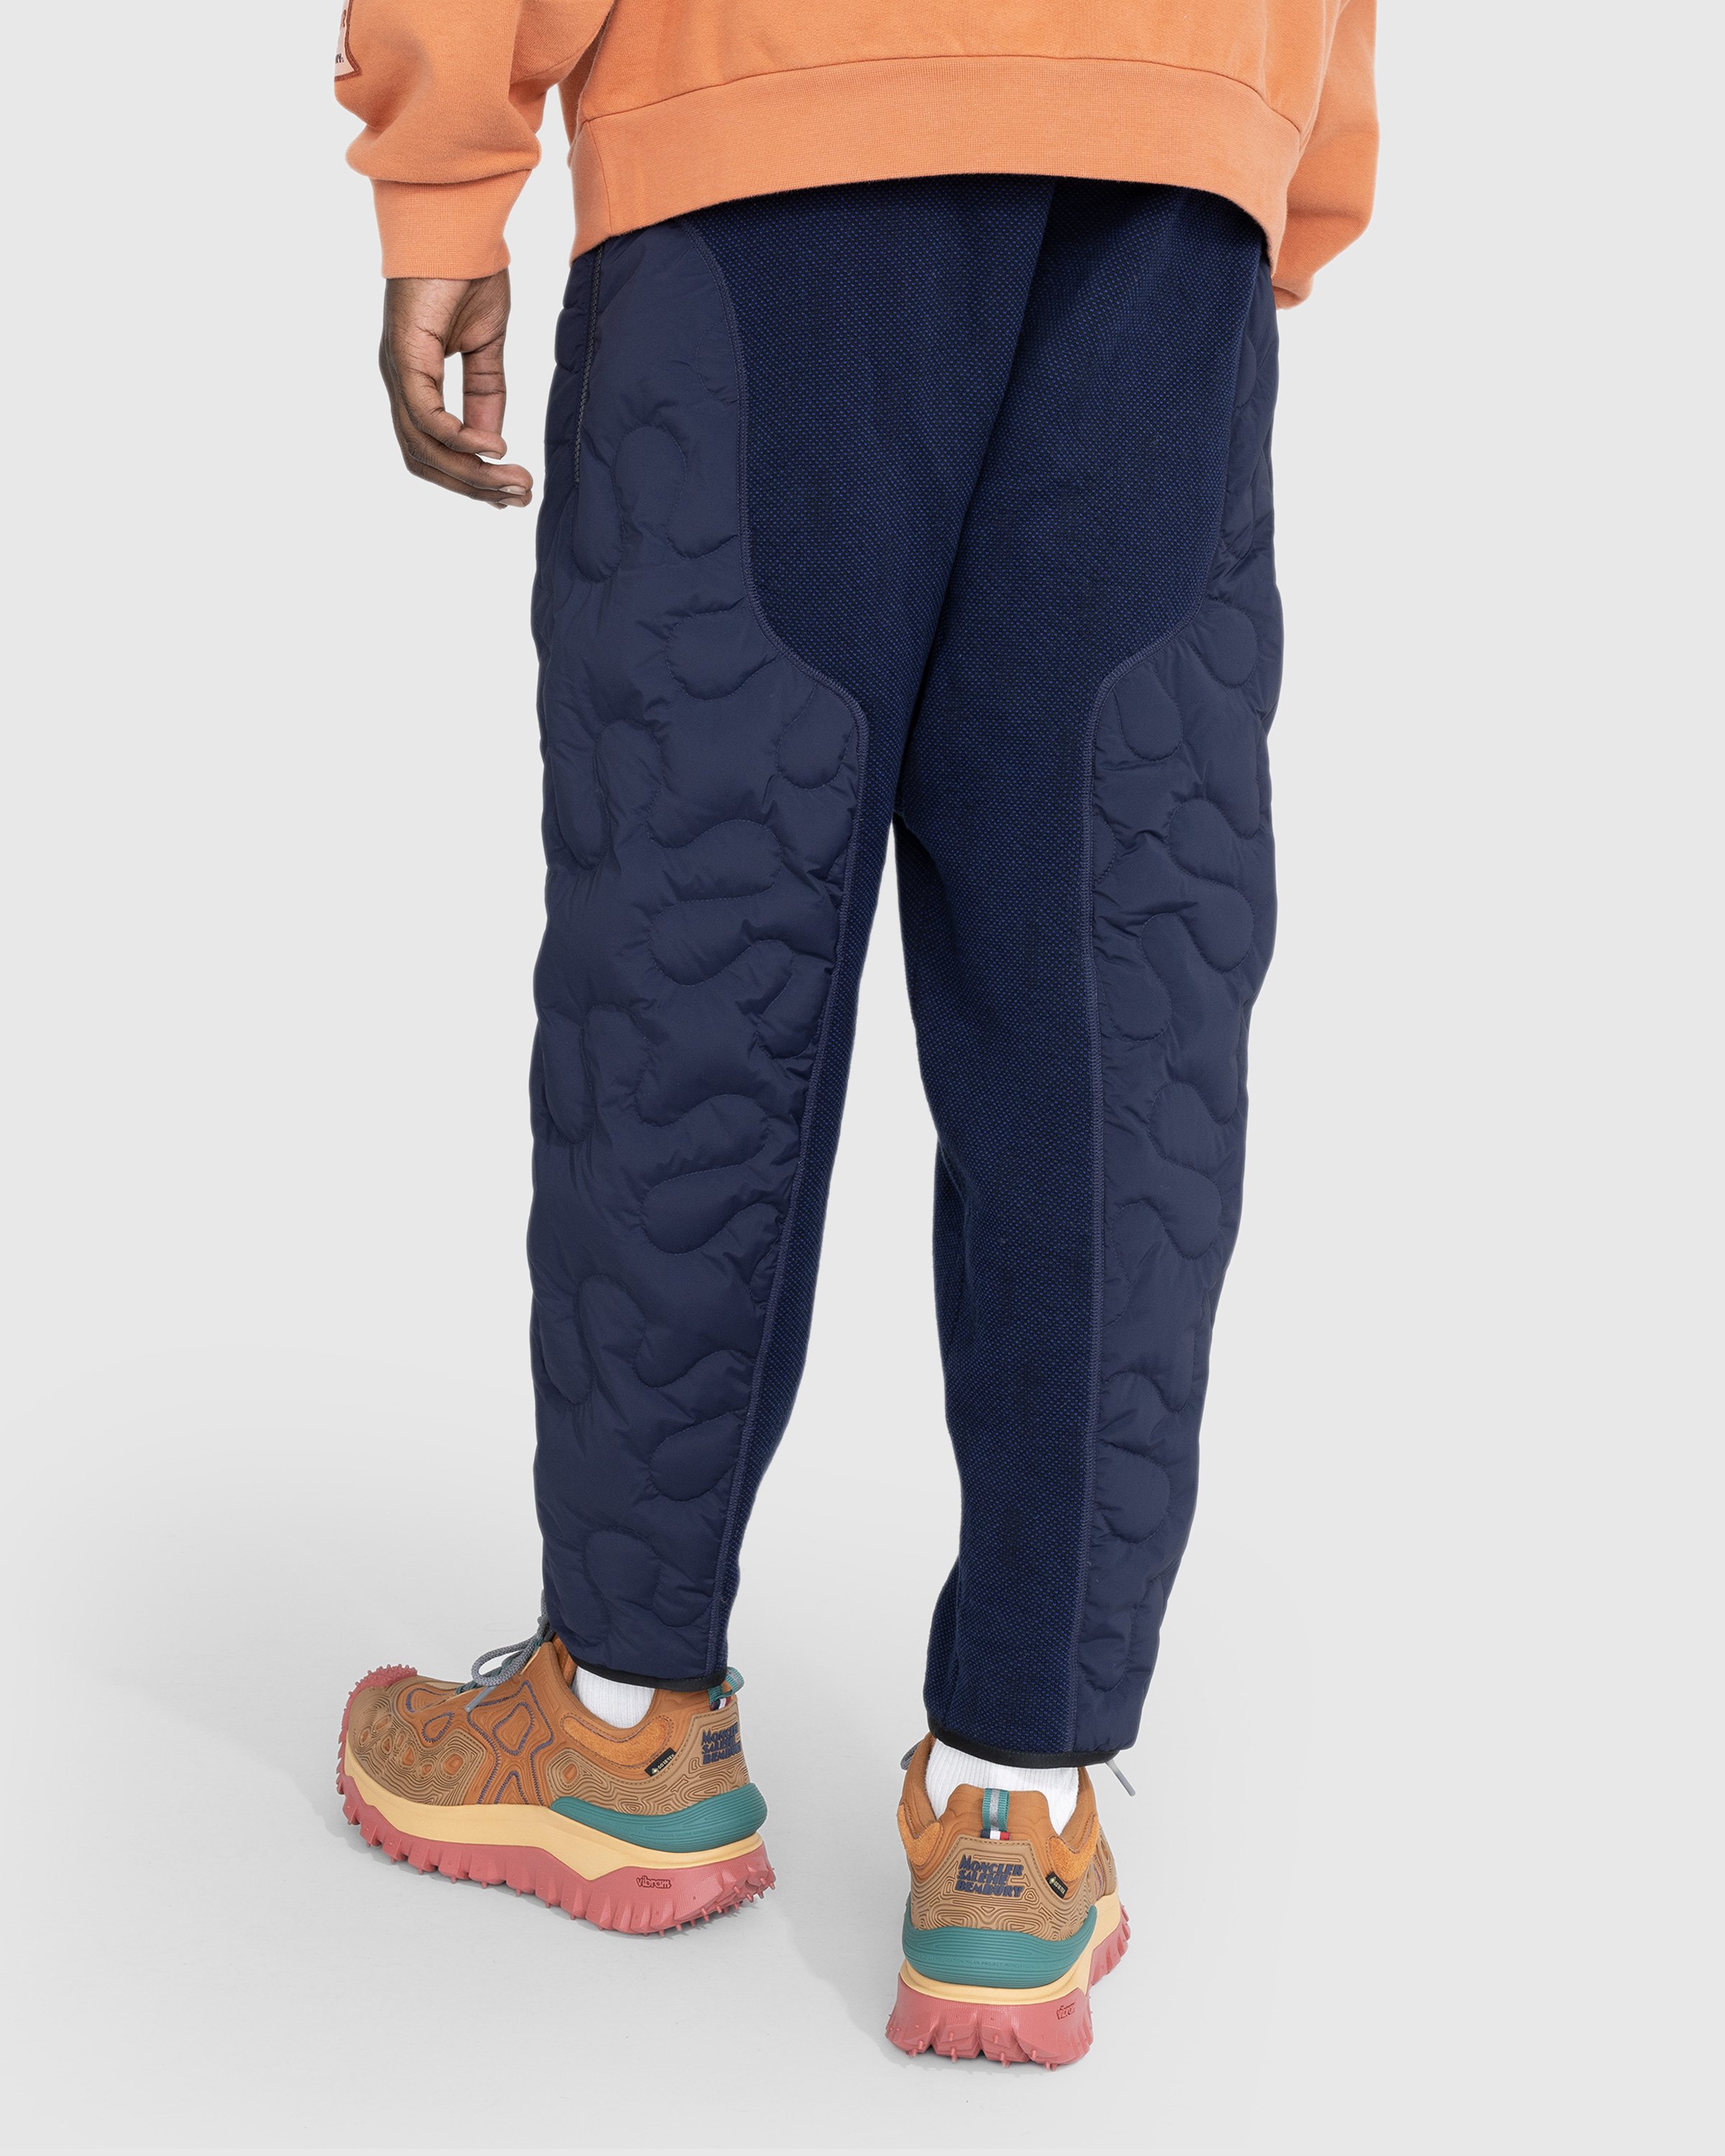 Moncler x Salehe Bembury - Padded Pants Blue - Clothing - Blue - Image 3